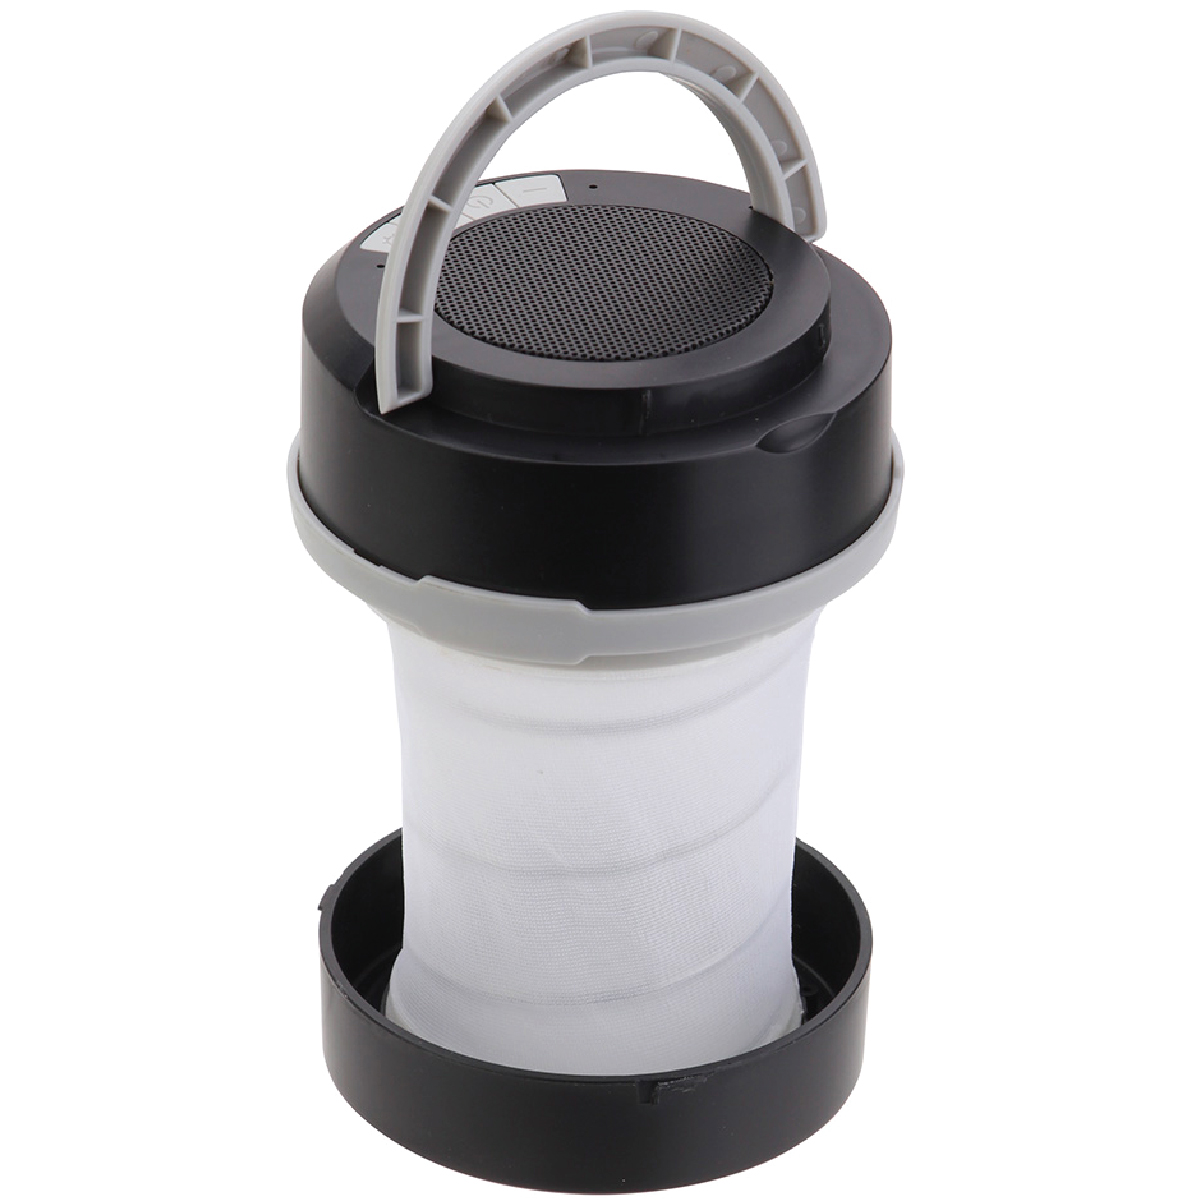 Black Revere Collapsible Lantern + Wireless Speaker